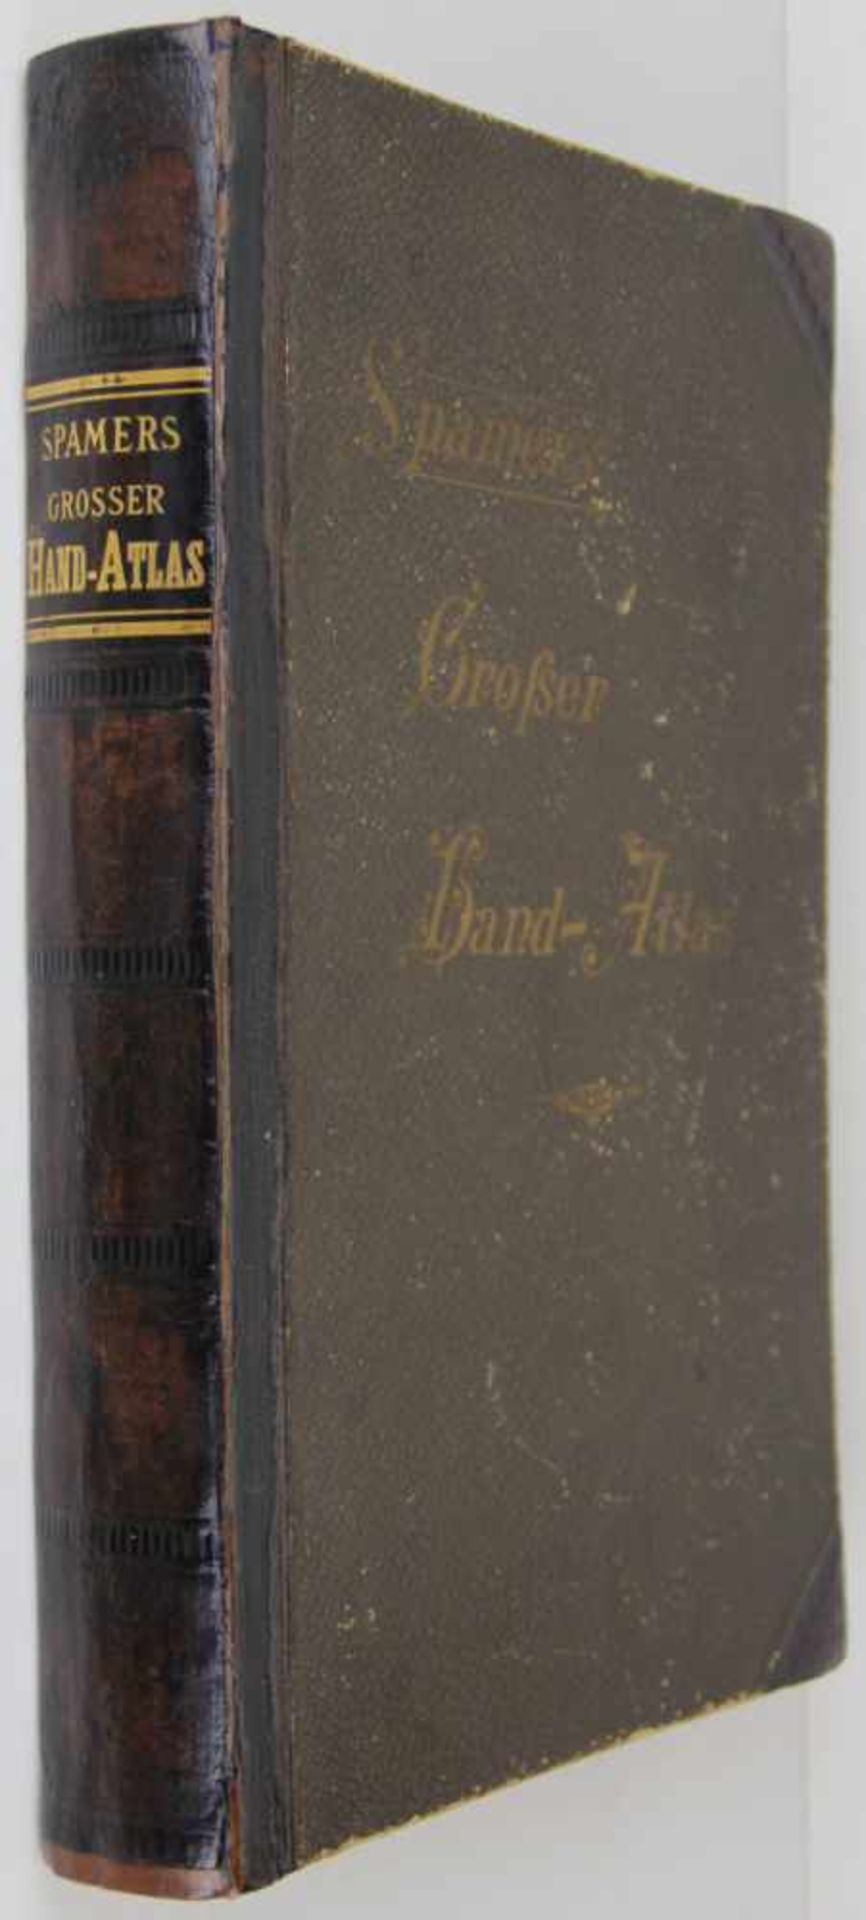 Atlanten. -Spamer, Otto:Grosser Hand-Atlas in 150 Kartenseiten nebst alphabetischem